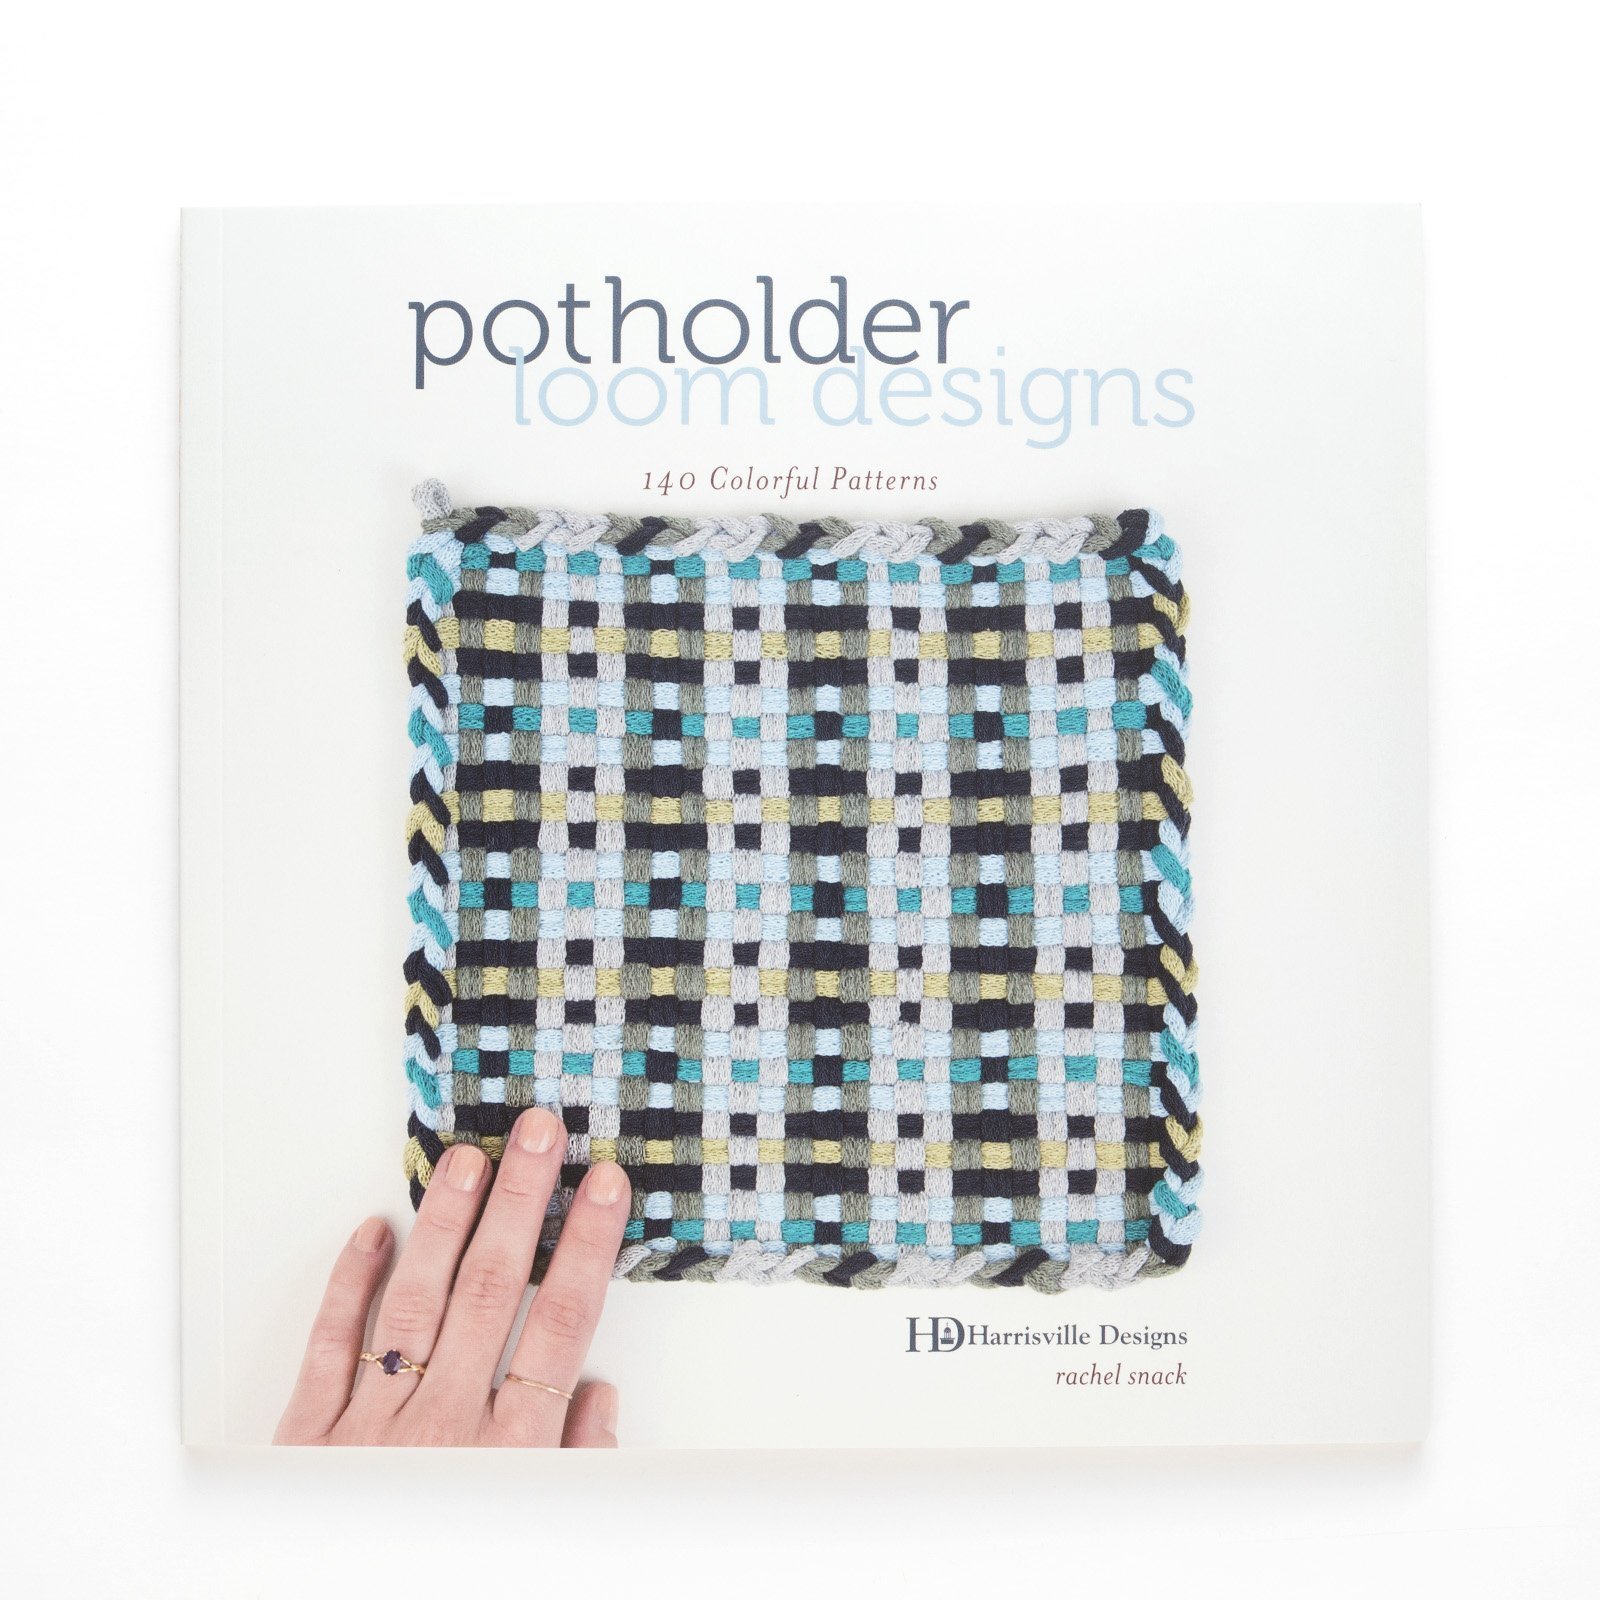 Make a potholder loom